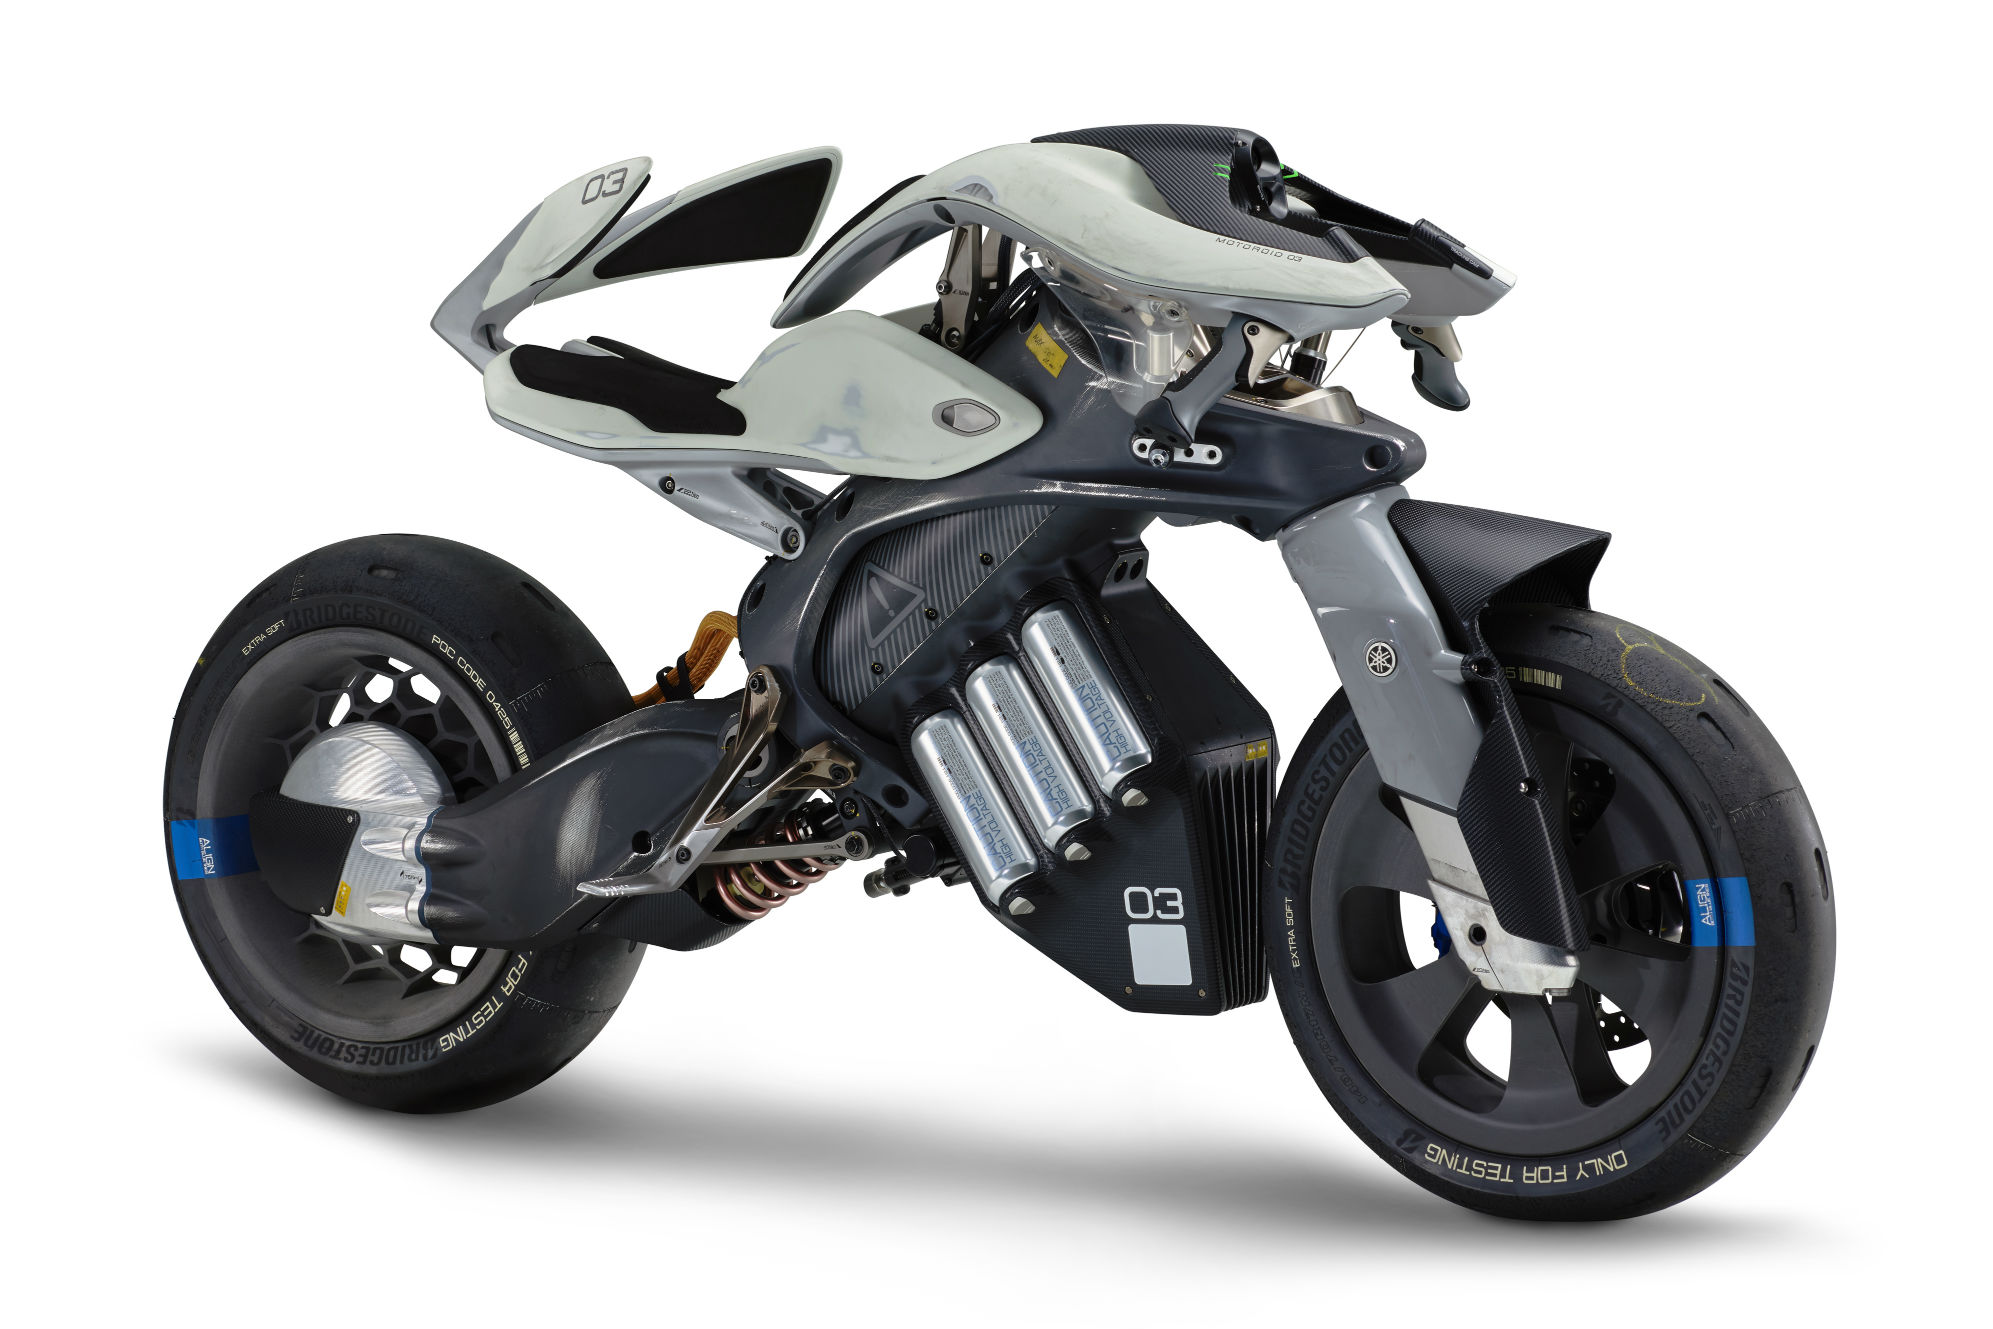 Yamaha giới thiệu moto có trí thông minh nhân tạo